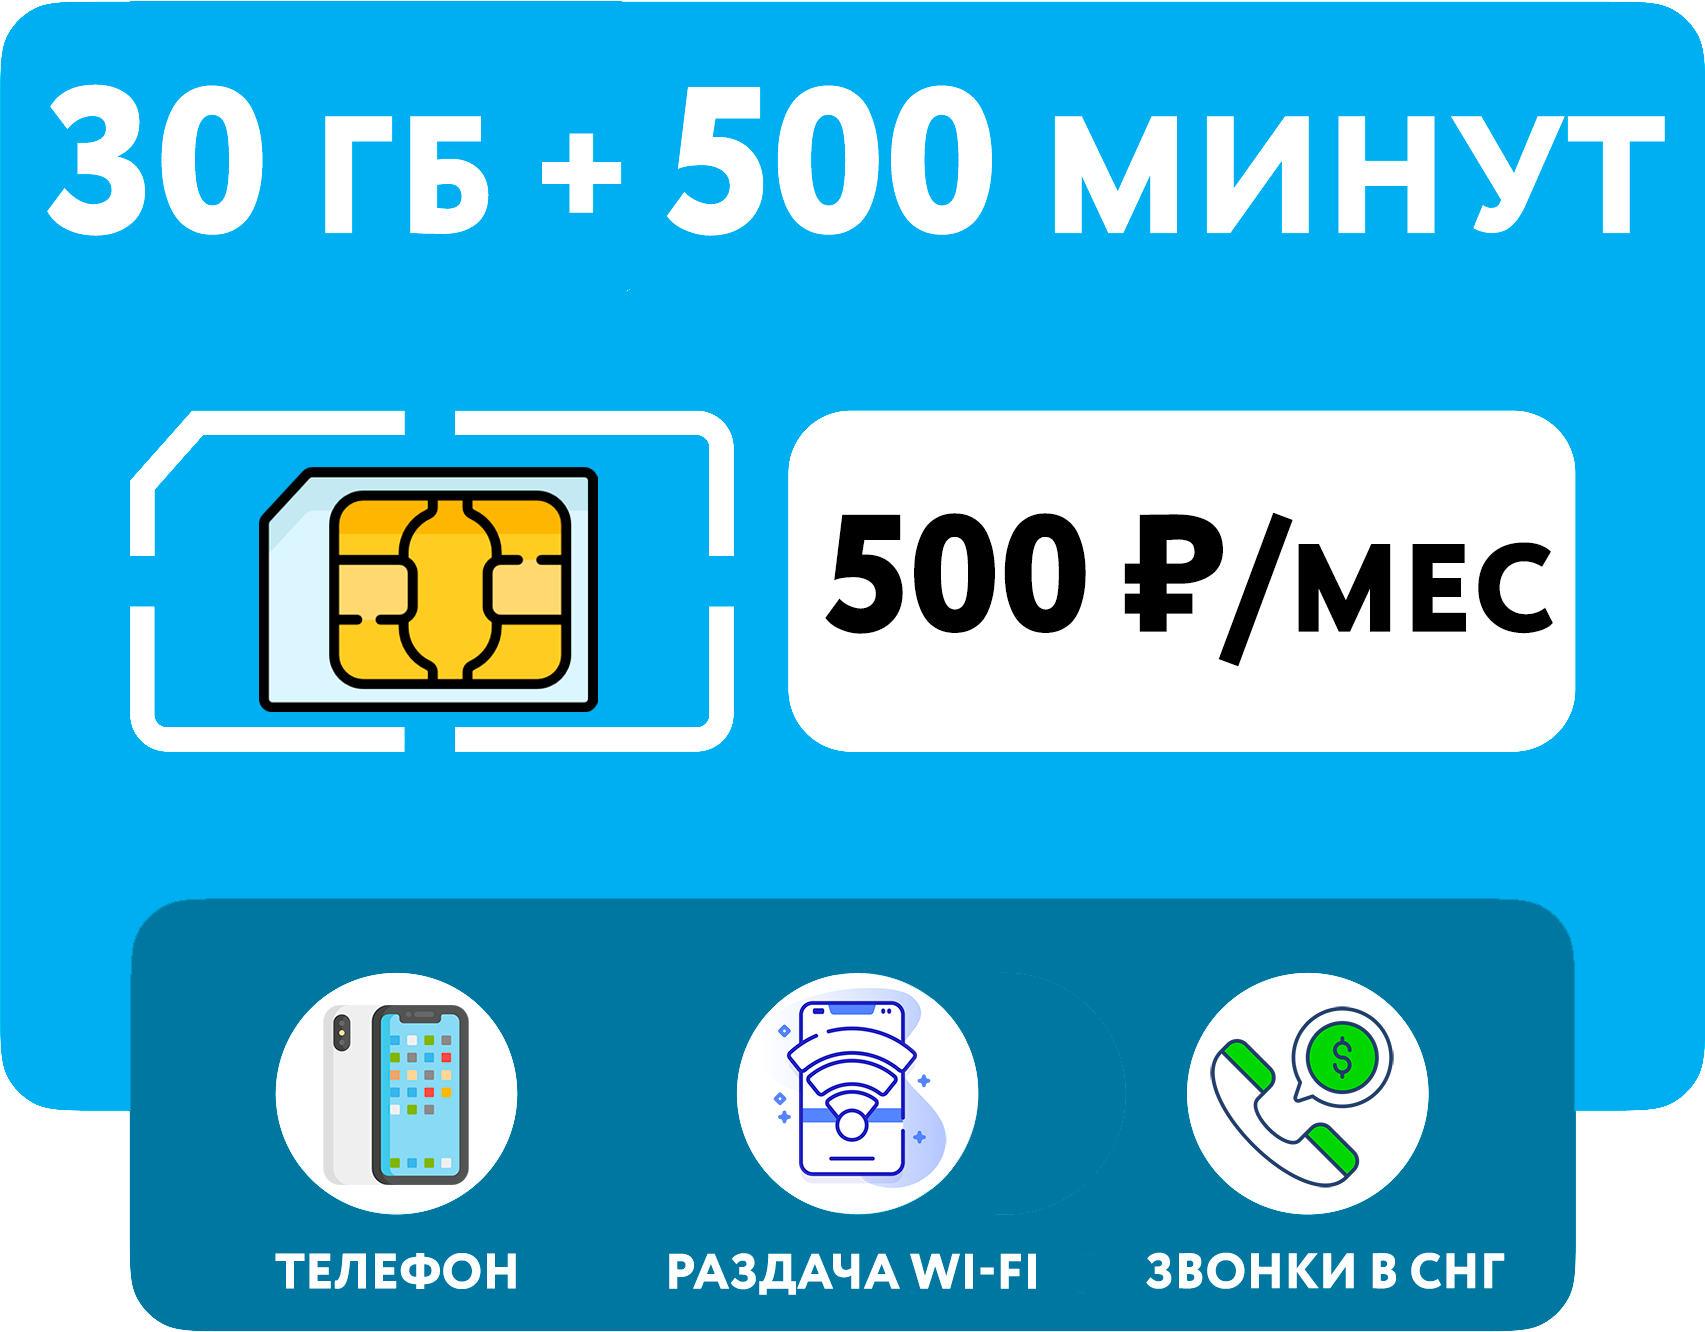 SIM-карта Йота (Yota) 30 гб интернет 3G/4G + 500 минут по РФ + выгодные звонки в СНГ (Вся Россия)